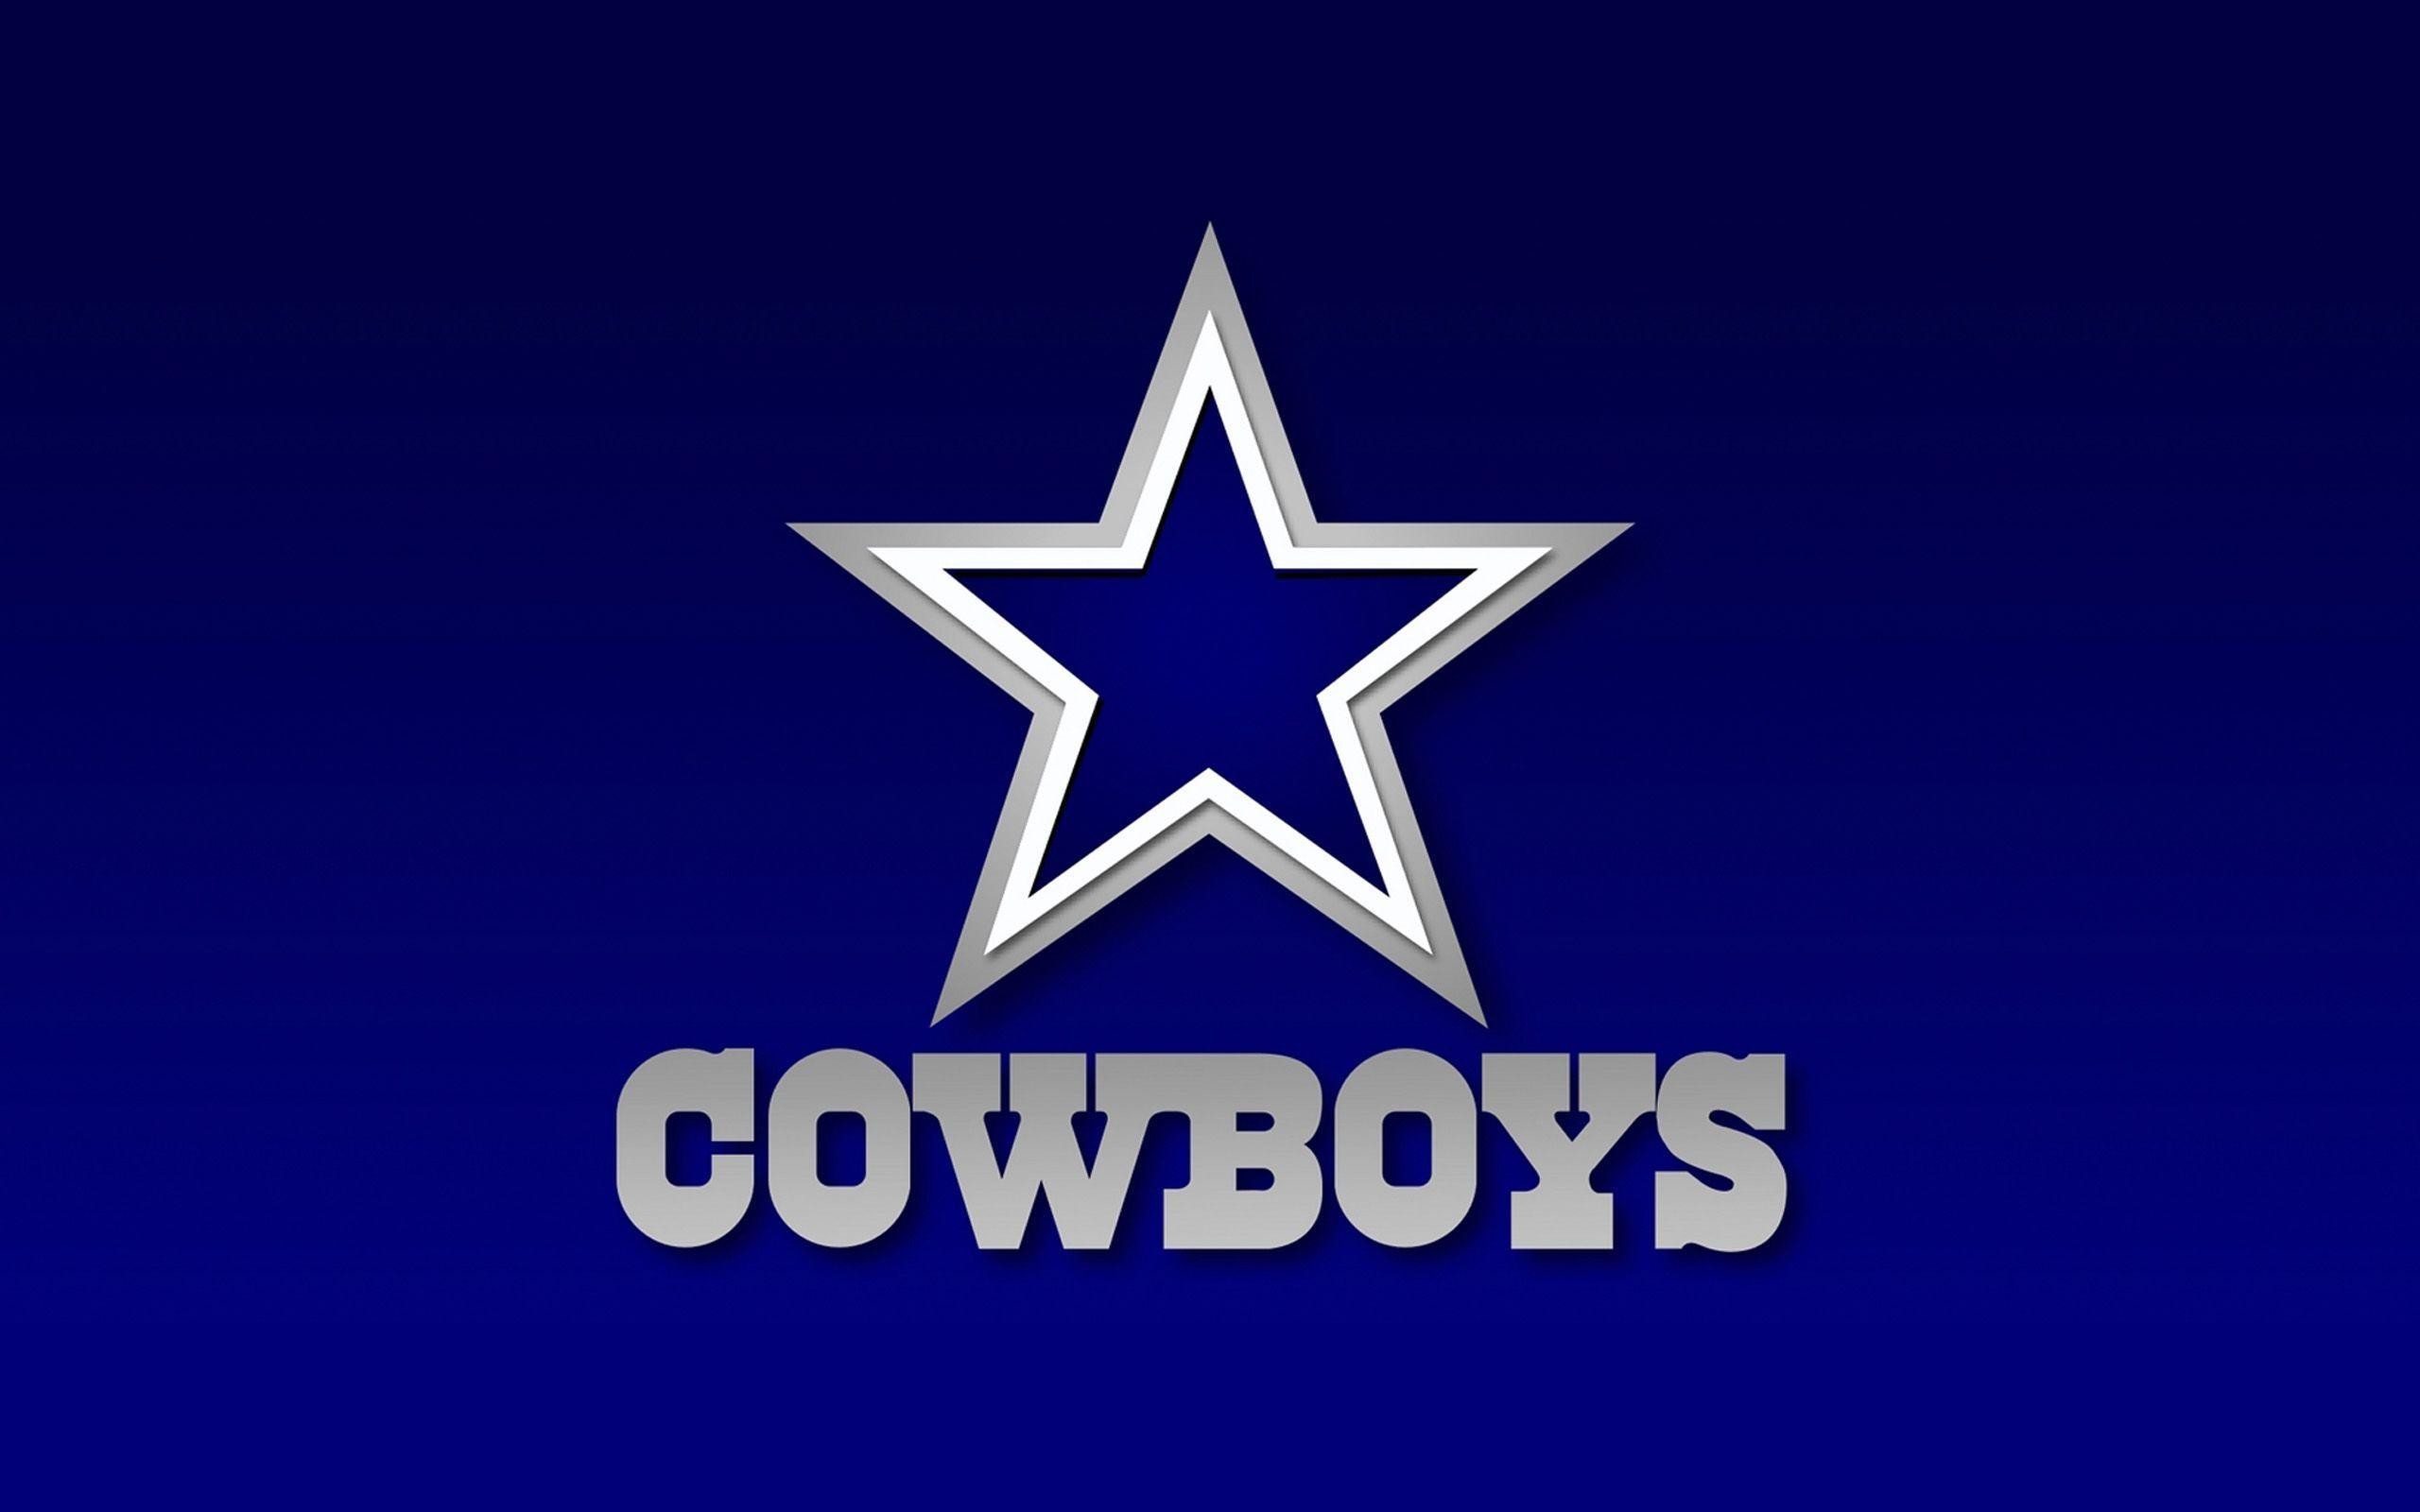 2560x1600 Dallas Cowboys wallpapers | Dallas Cowboys background - Page 3